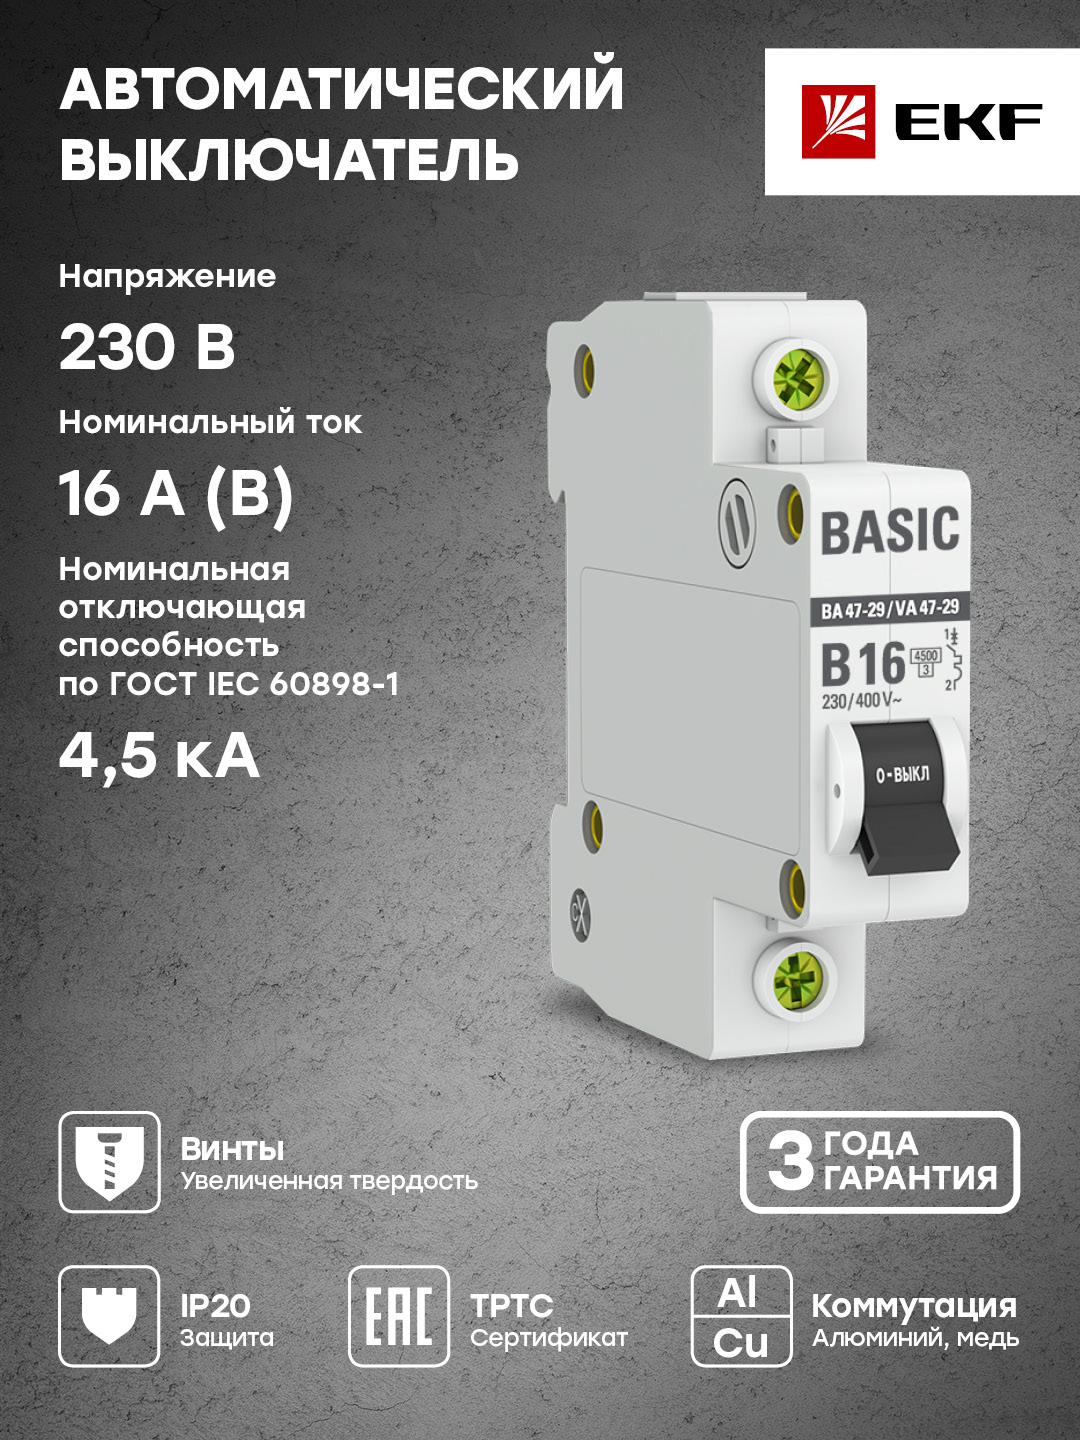 Автоматический выключатель EKF Basic 1P 16А (B) 4,5кА ВА 47-29 mcb4729-1-16-B